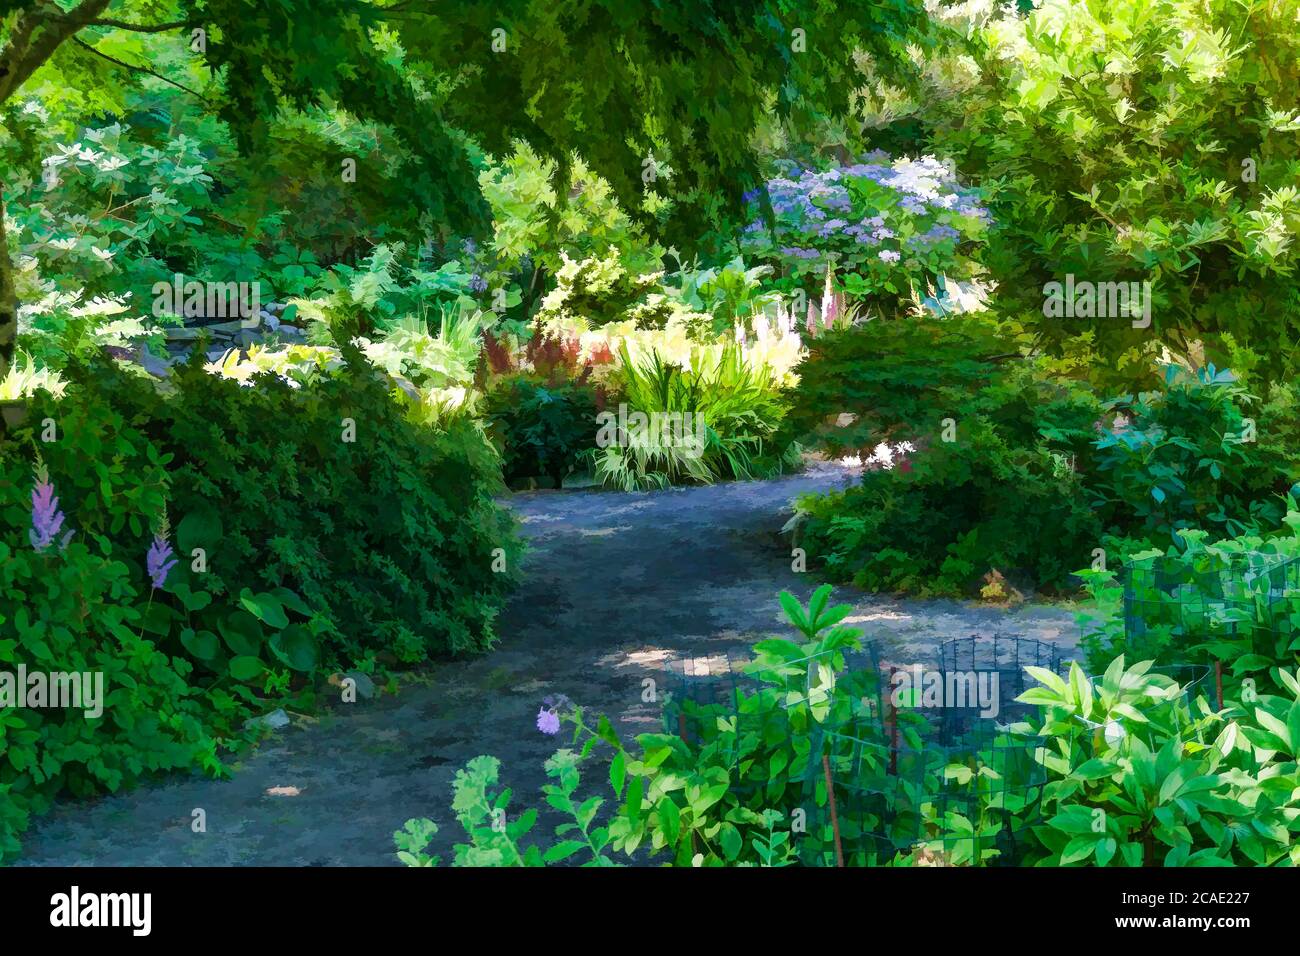 Una verione artistica di una scena giardino a Seatac, Washington. Foto Stock